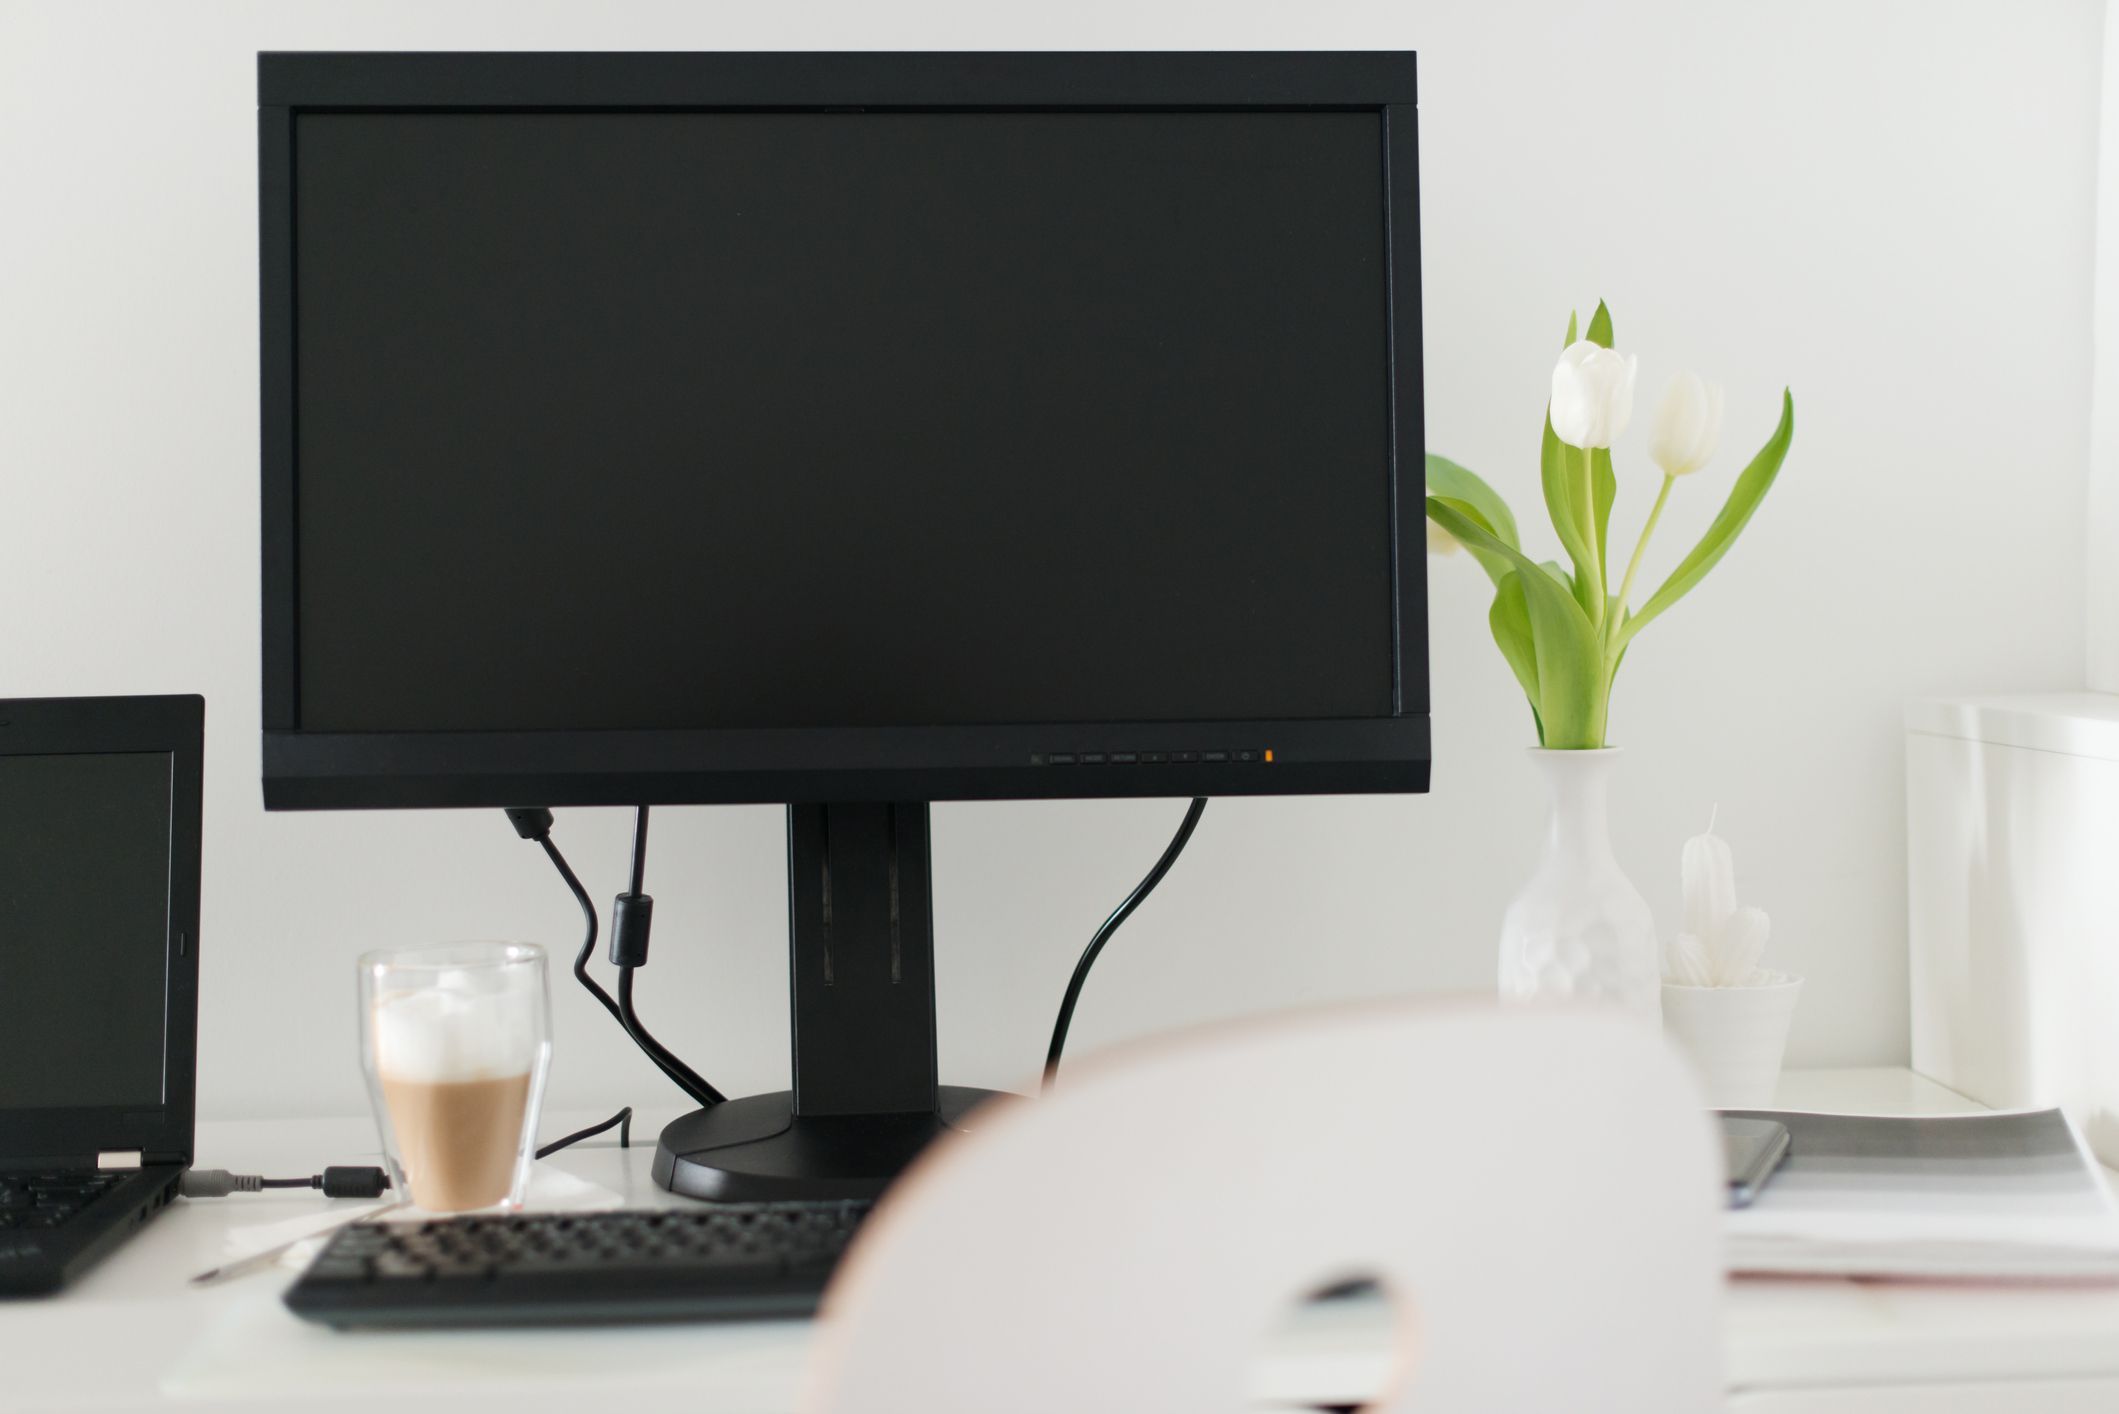 Монитор ПК на белом столе рядом с ноутбуком, белая ваза с цветами в нем и кофе